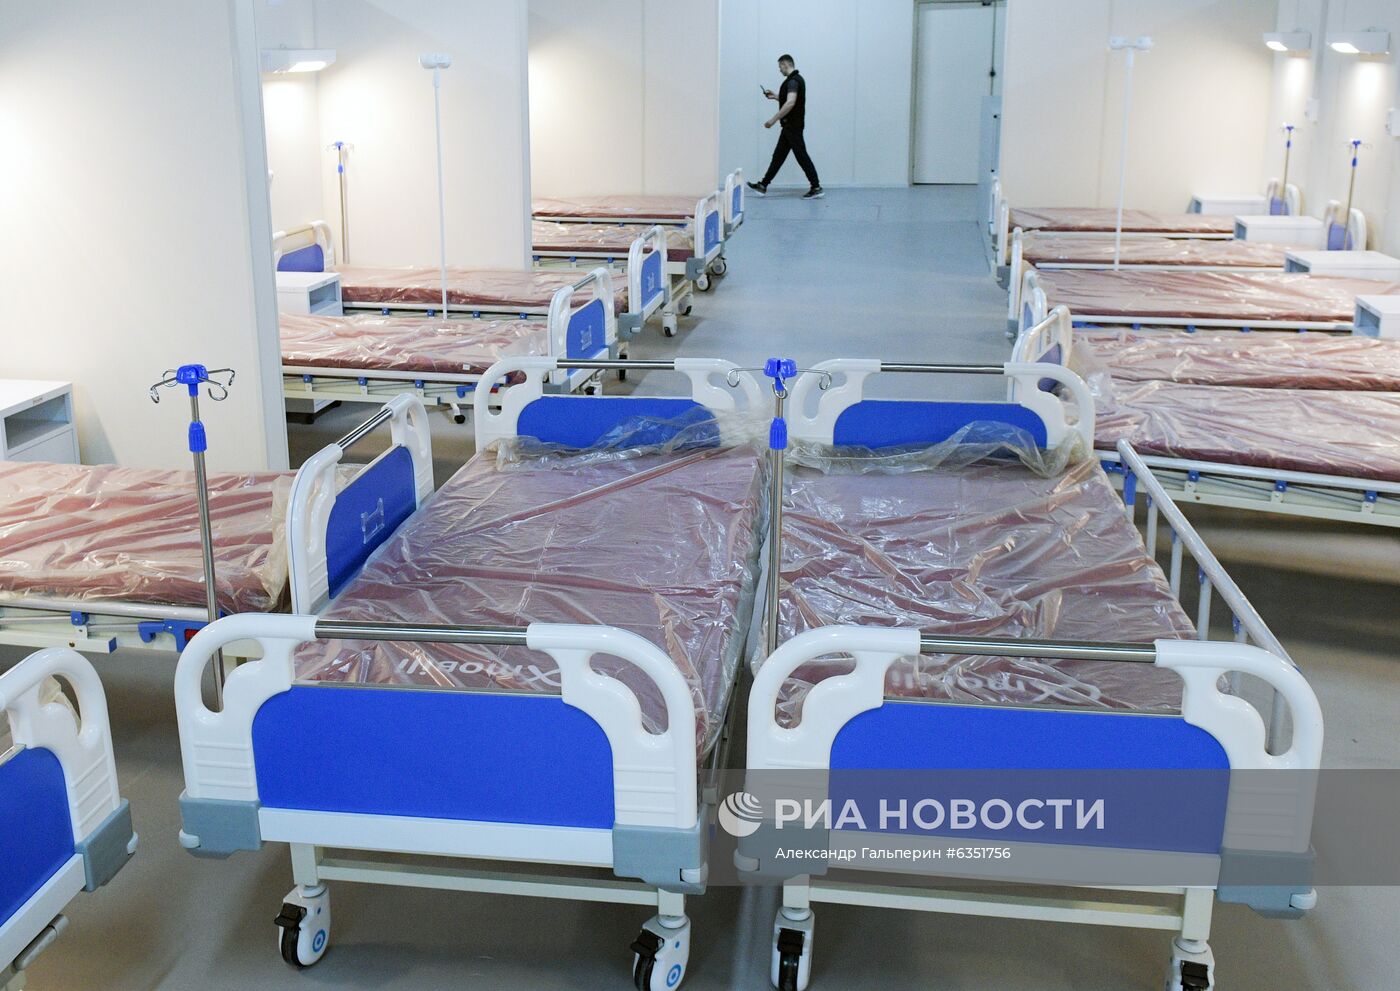 Подготовка временного госпиталя в "Ленэкспо" к приему пациентов с COVID-19